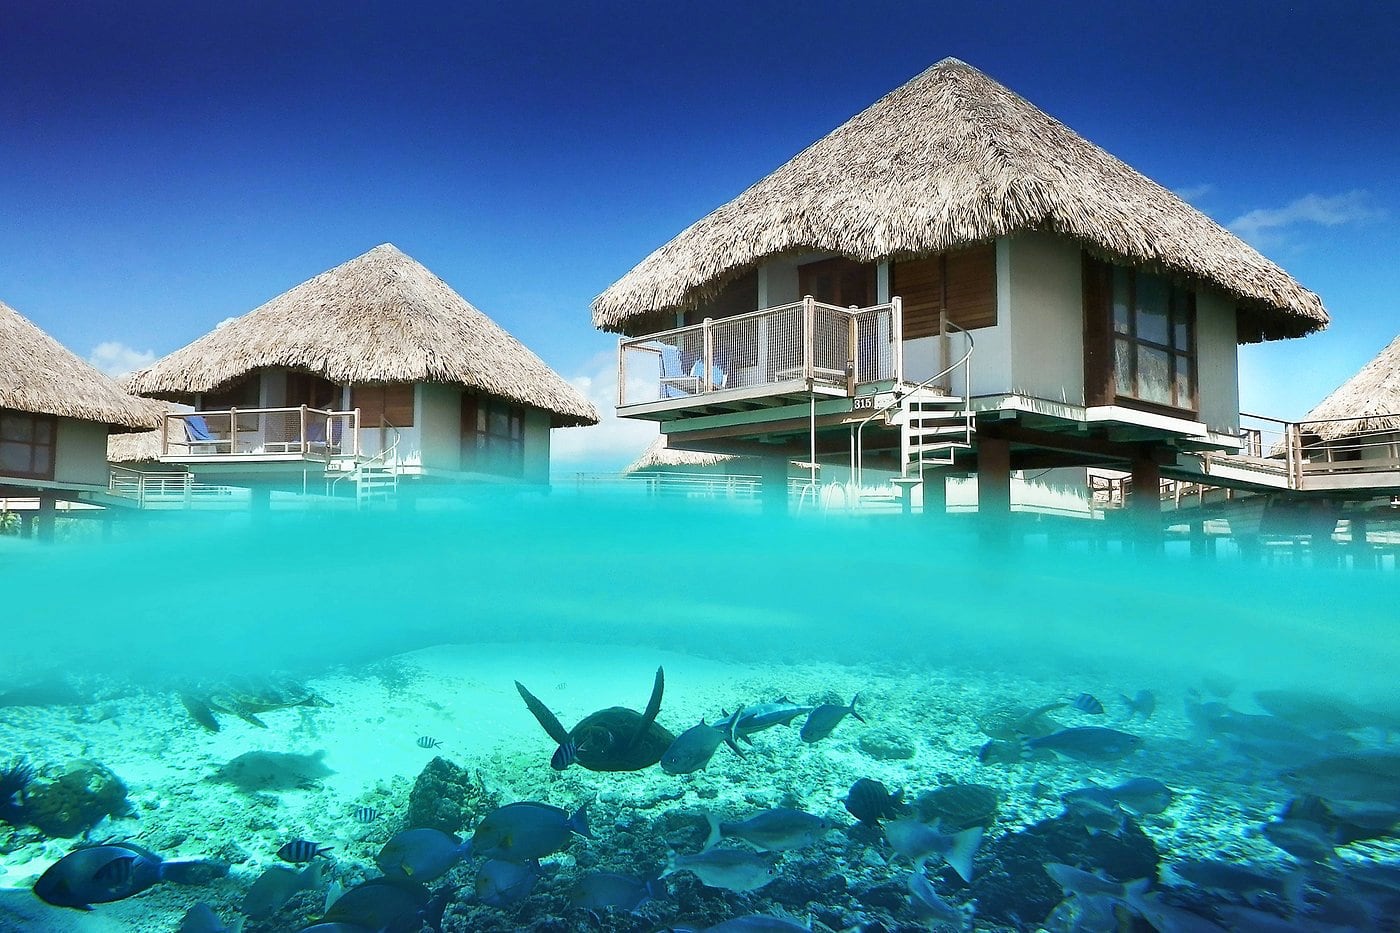 Le Meridien overwater bungalows in Bora Bora